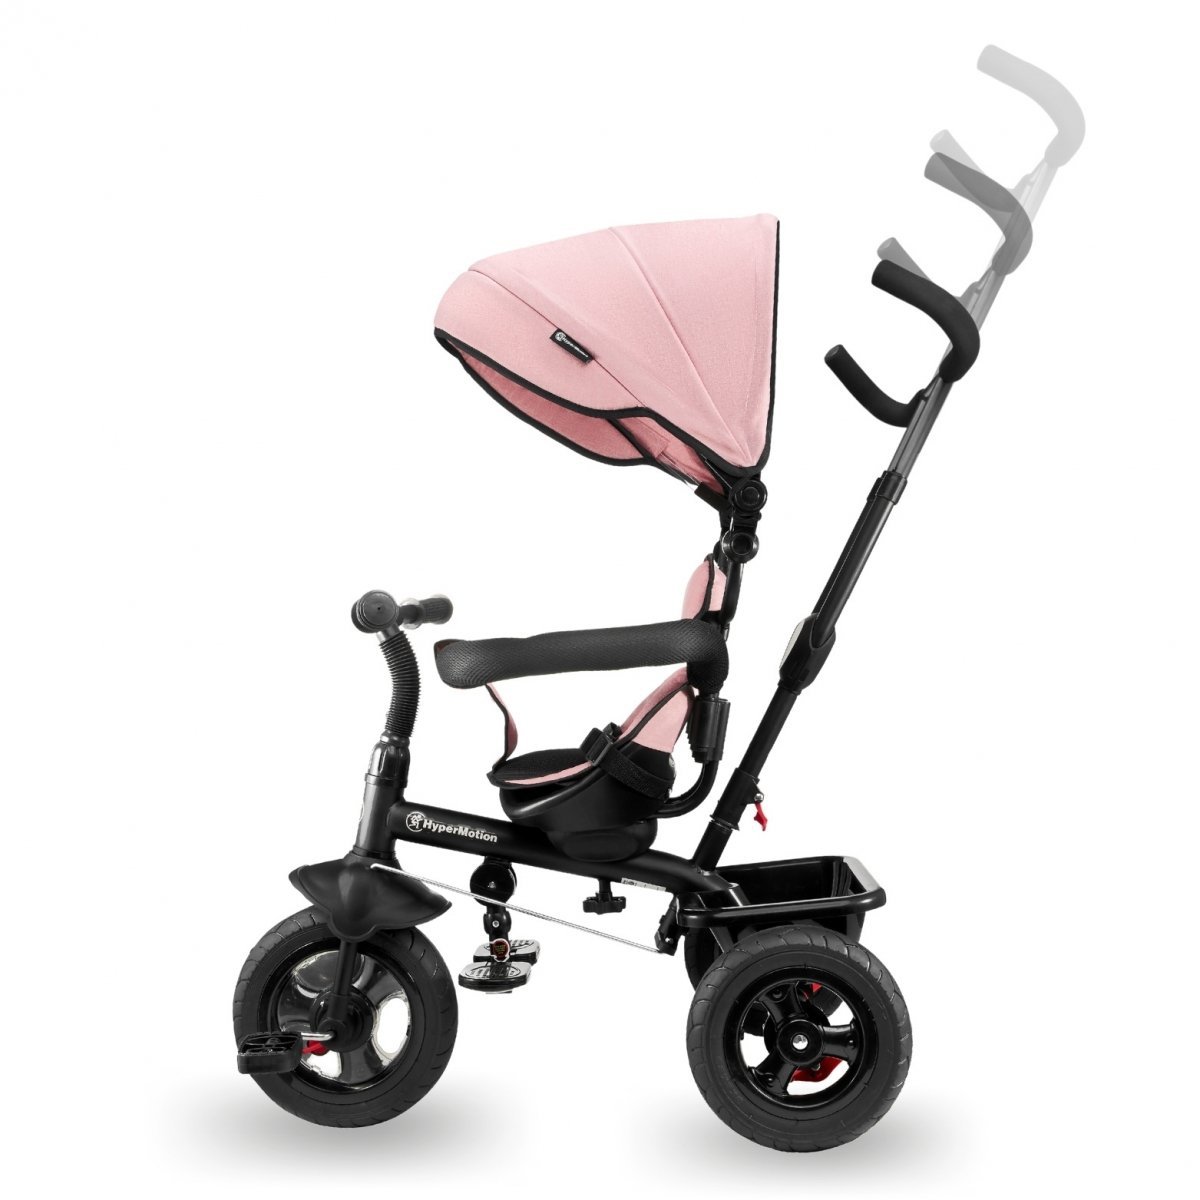 Rowerek trójkołowy dla dzieci 1-4 lata - TOBI FREY - kolor różowy - obracany - wiecznie pompowane koła + pchacz